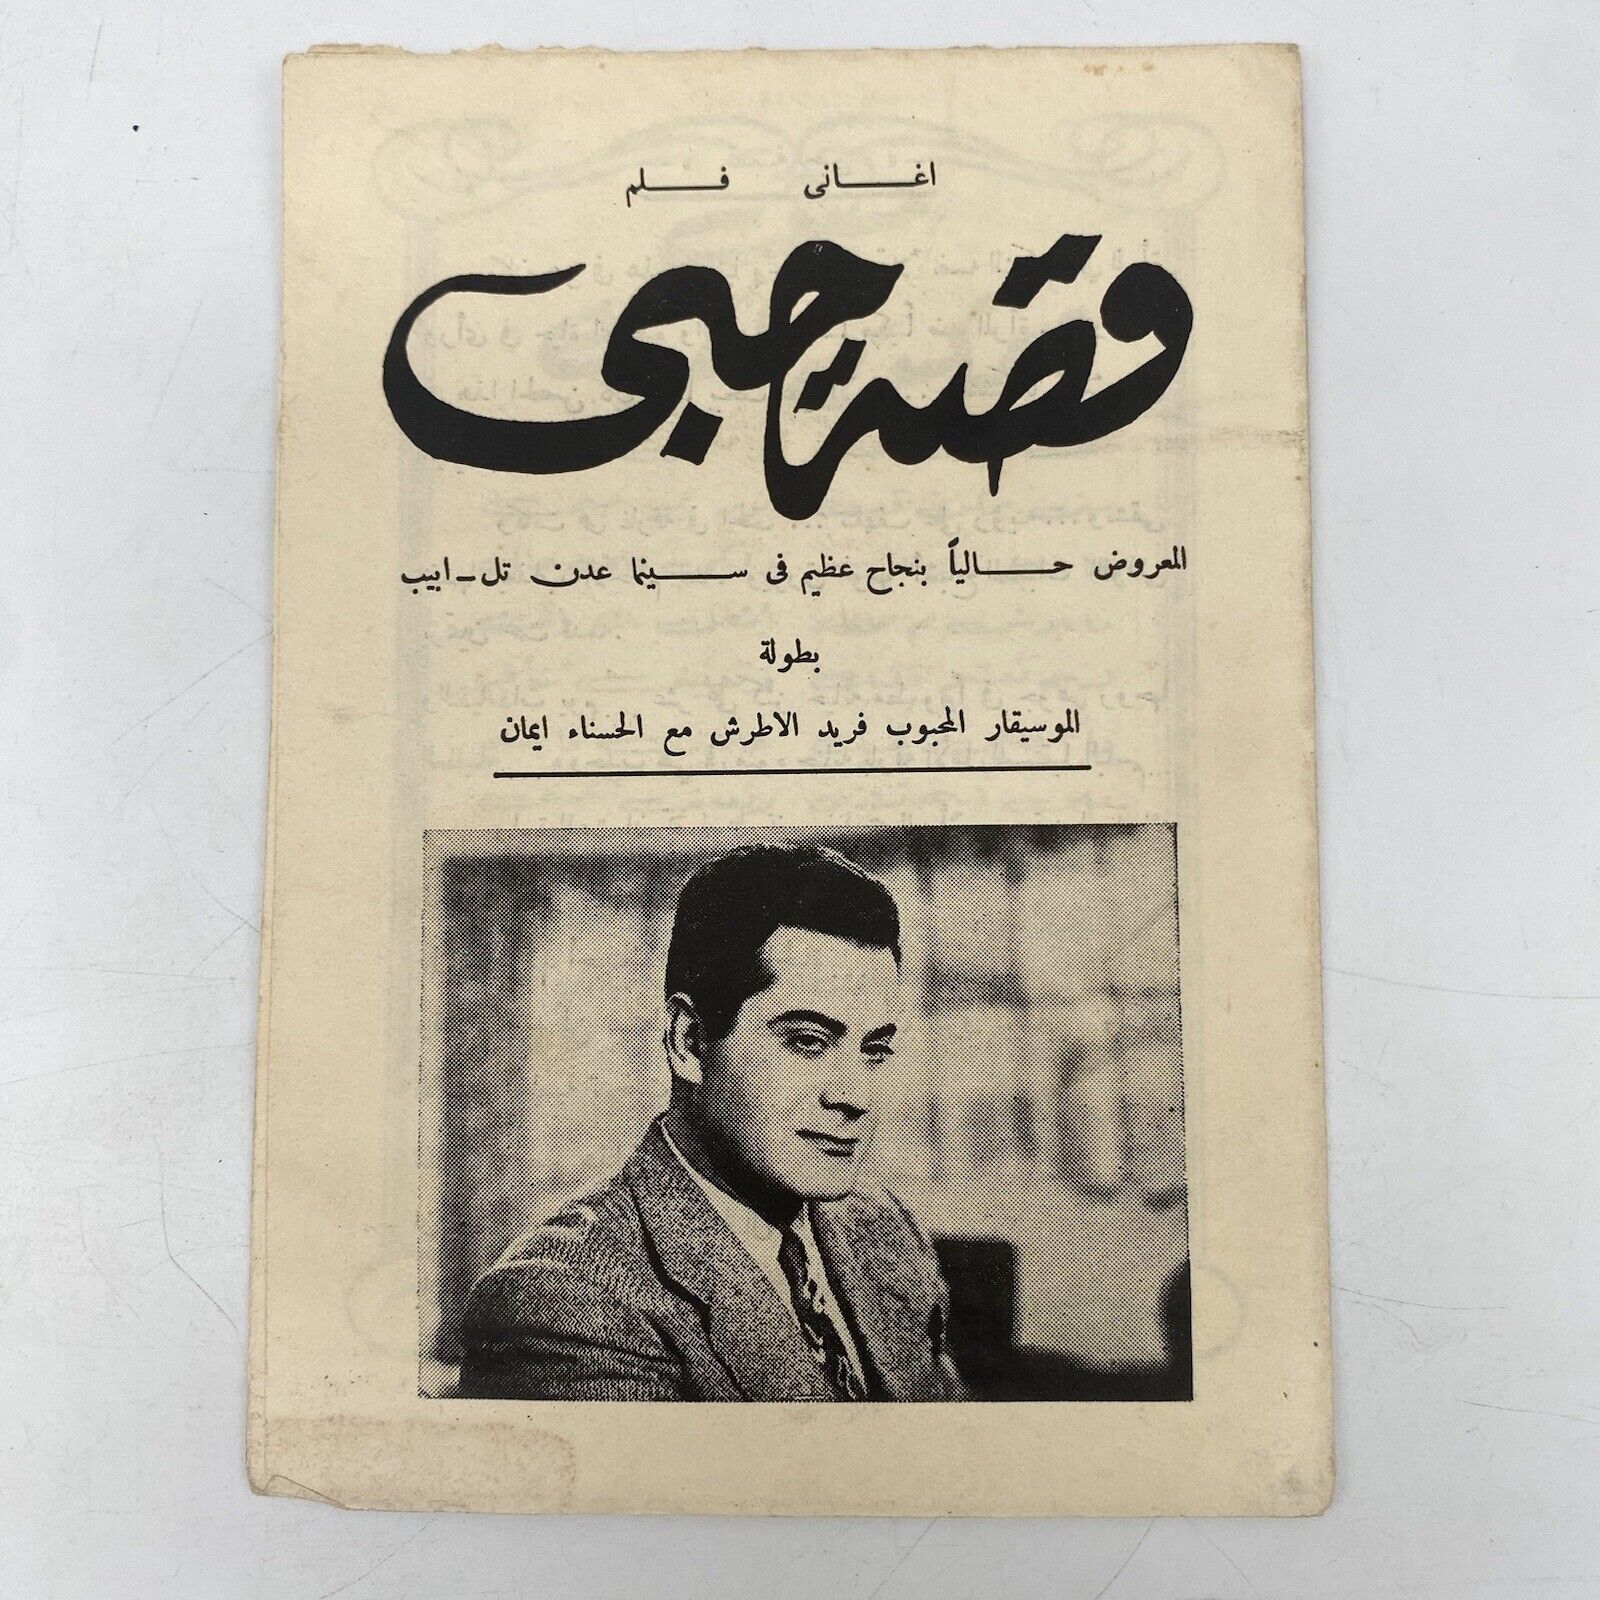 Israel Curiosity : 1950 Egypt Hebrew Language Film Movie Brochure Al-Atrash AAA 